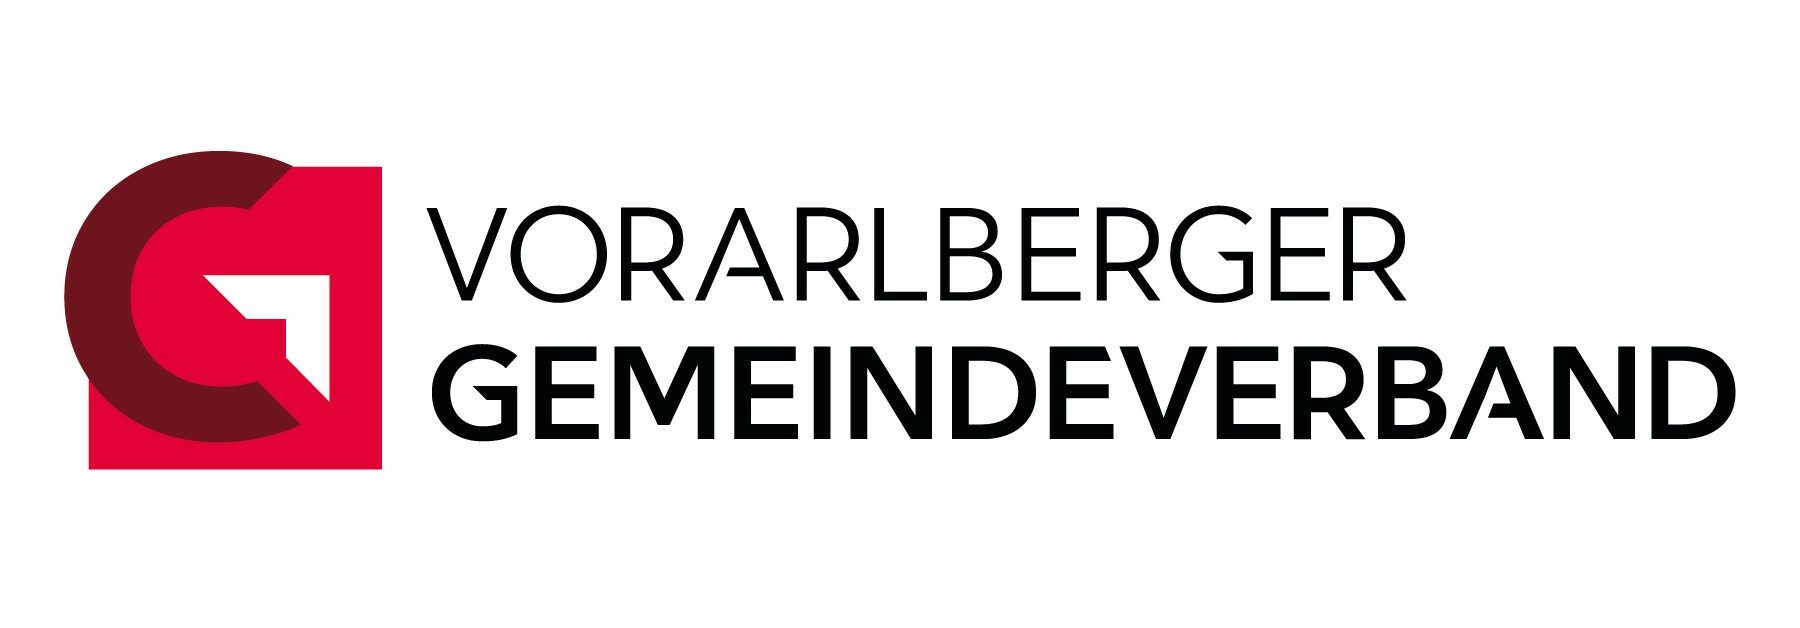 Gemeindeverband Vorarlberg